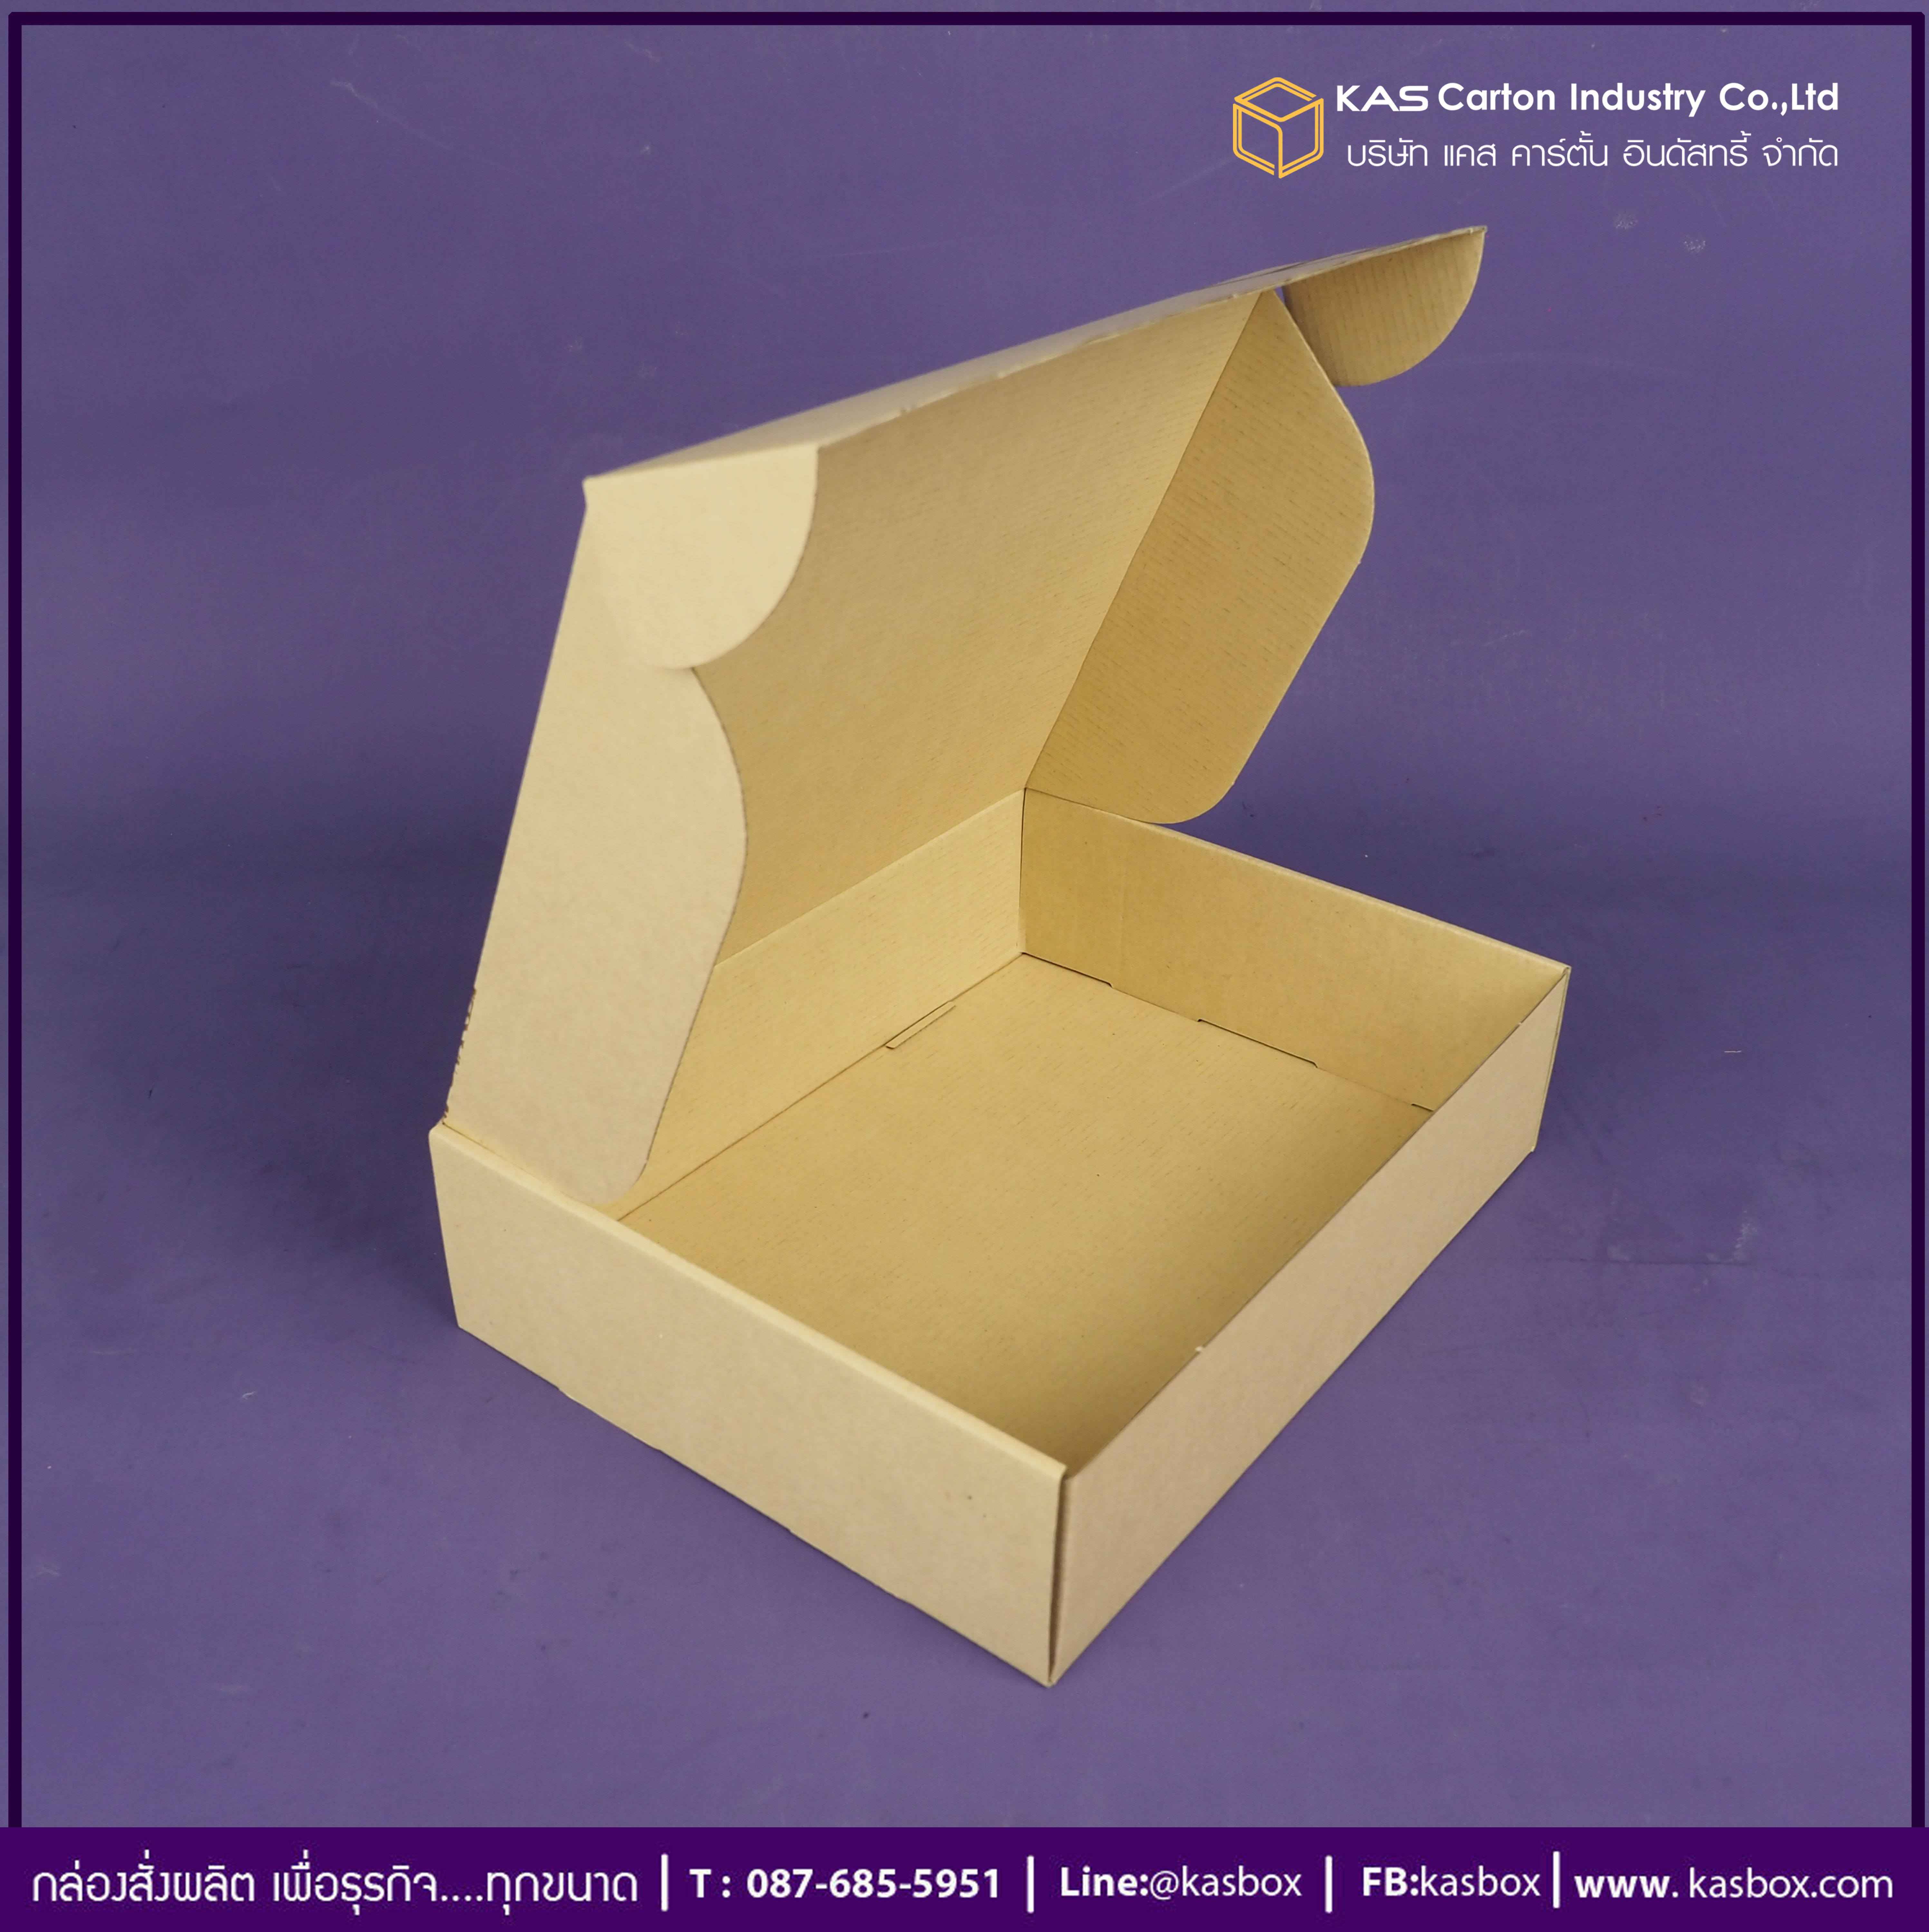 กล่องลูกฟูก สำเร็จรูป และ สั่งผลิต ตามความต้องการลูกค้า กล่องลูกฟูก SME กล่องกระดาษลูกฟูก กล่องอาหาร สเต๊กพรีเมี่ยม Neils Tavern